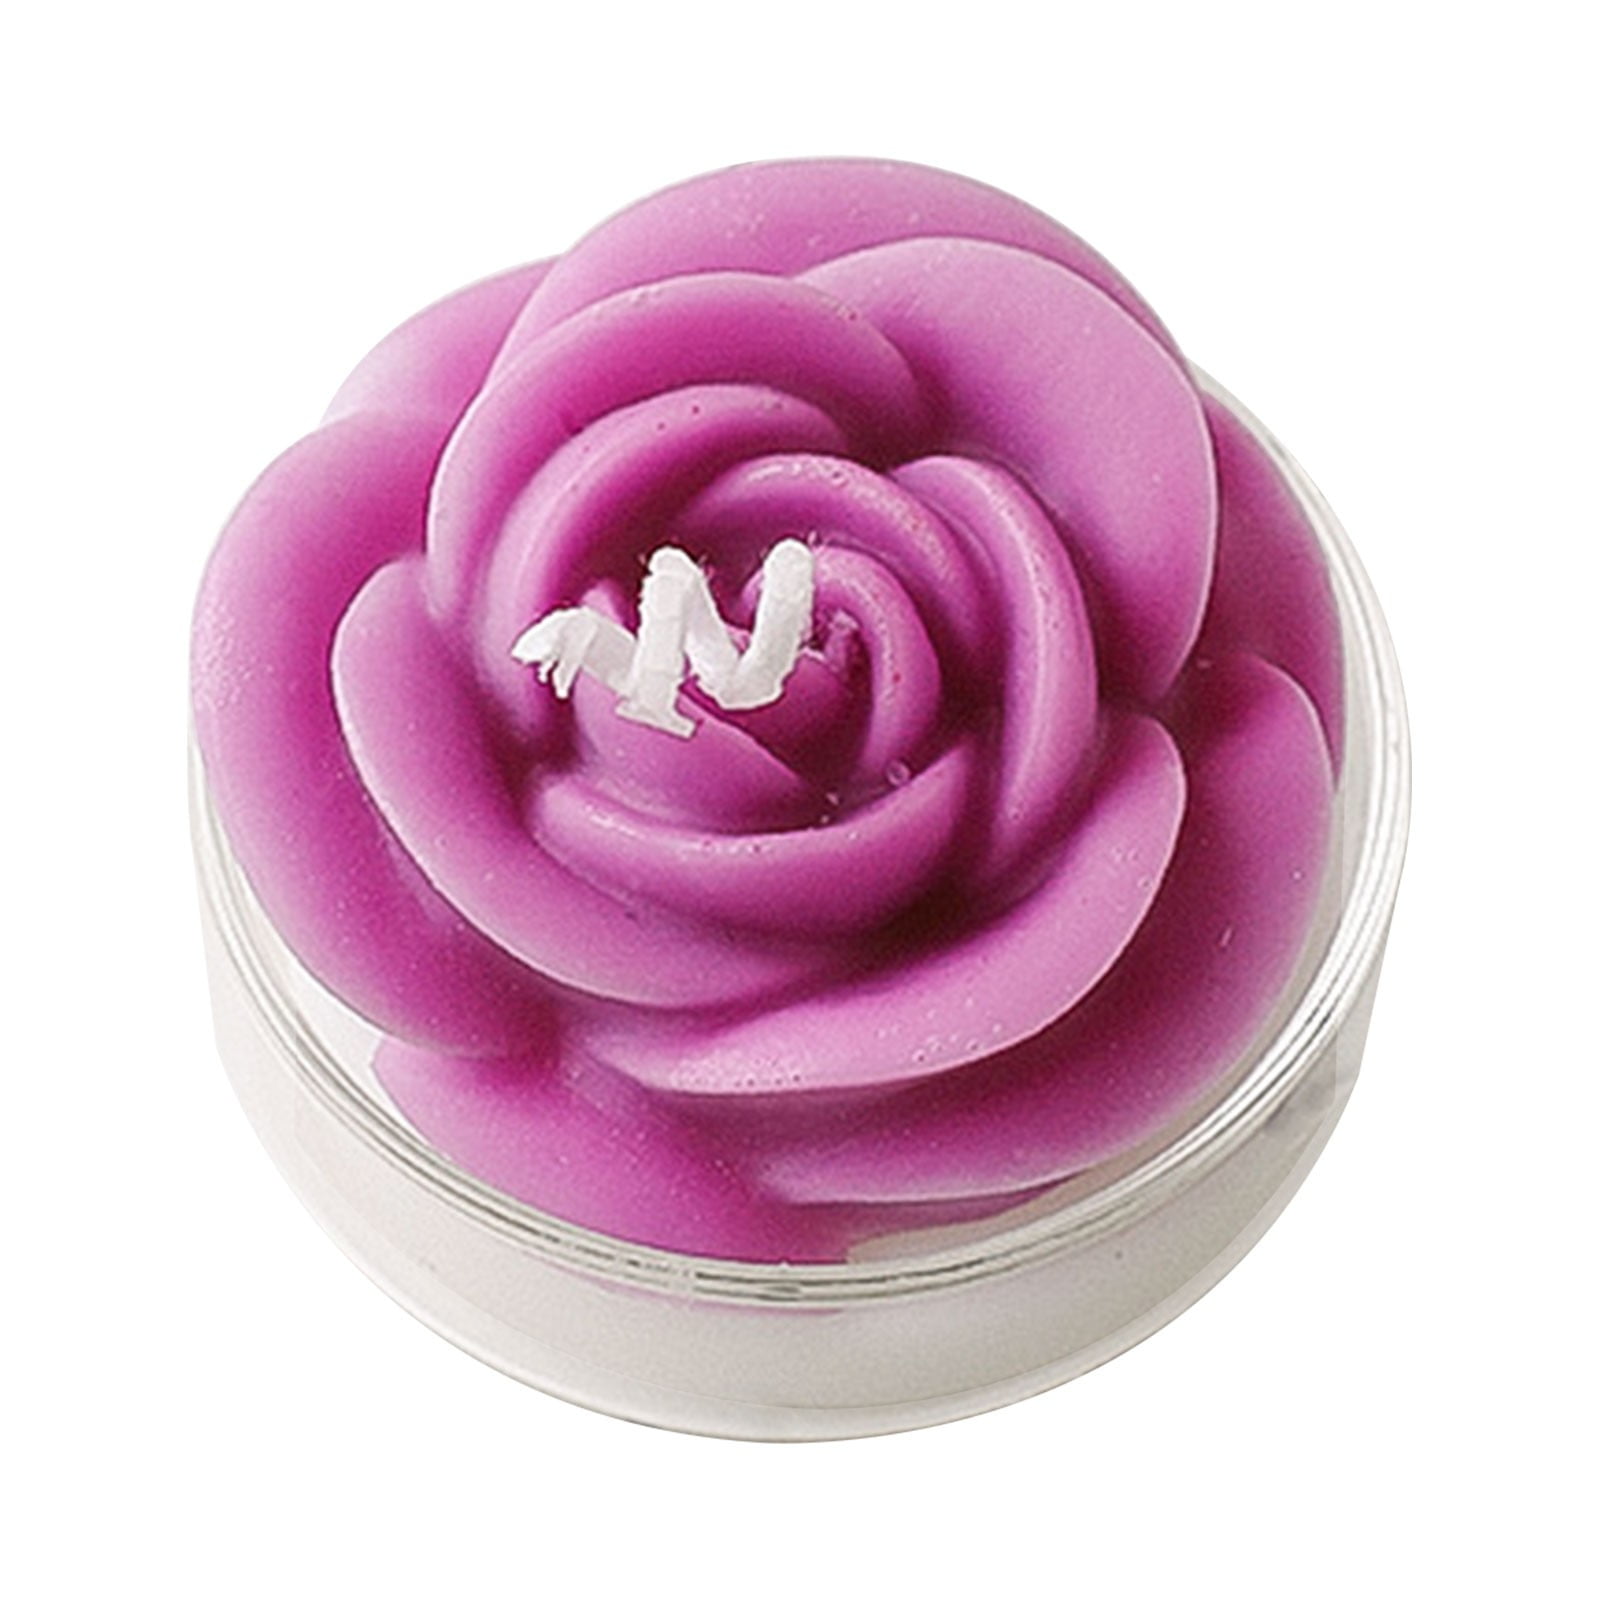 Rose Healing Candle Soy Wax 10oz – Blu Lunas Shoppe